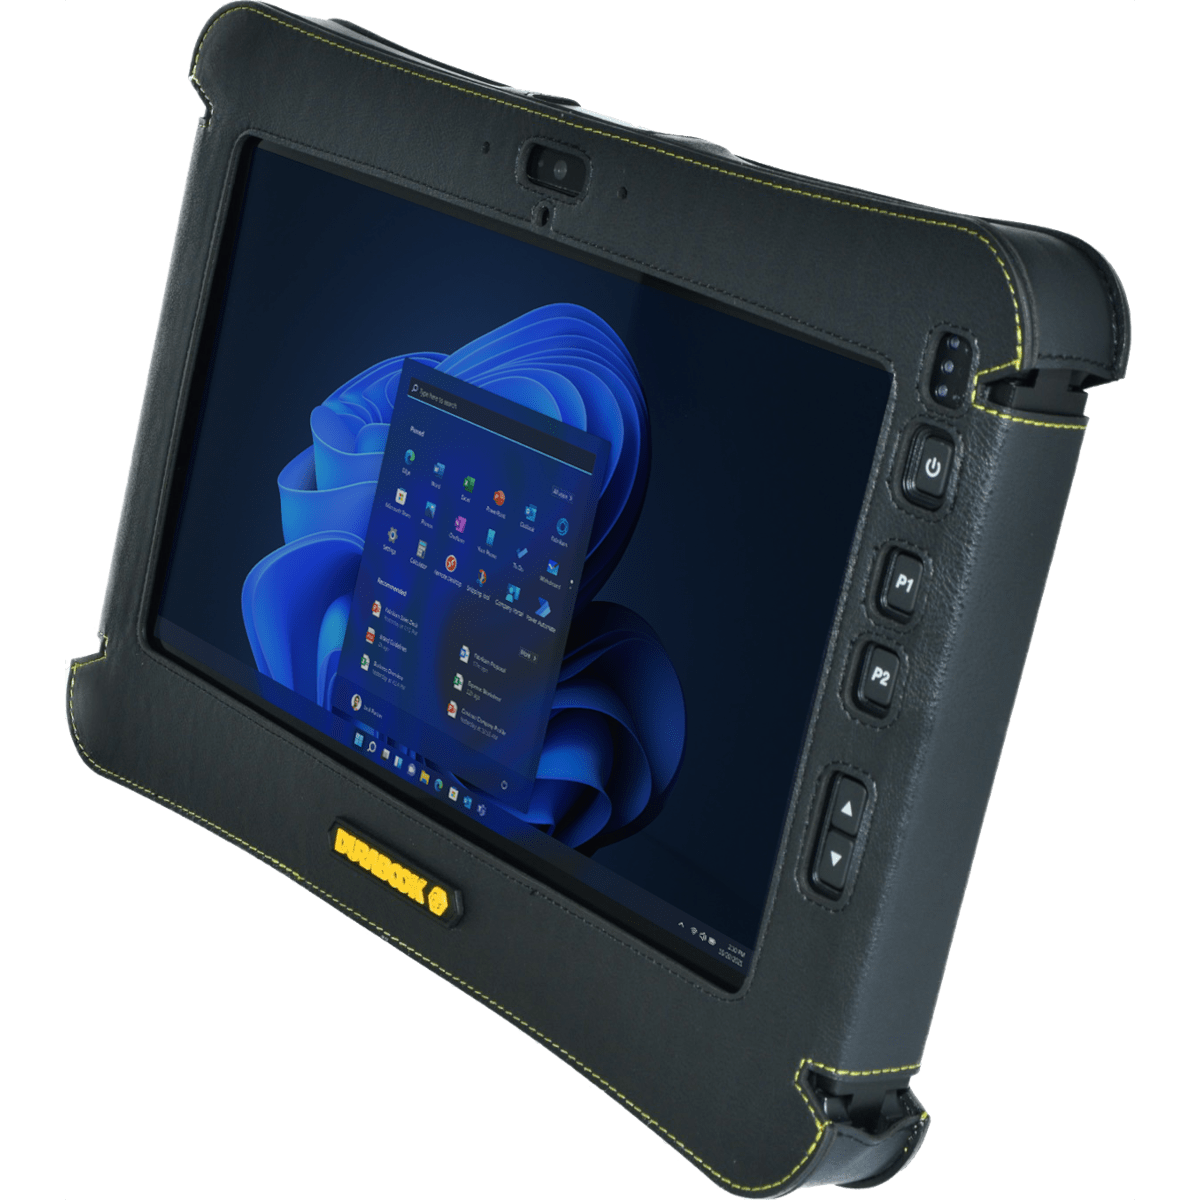 Durabook U11I-EX Tablet